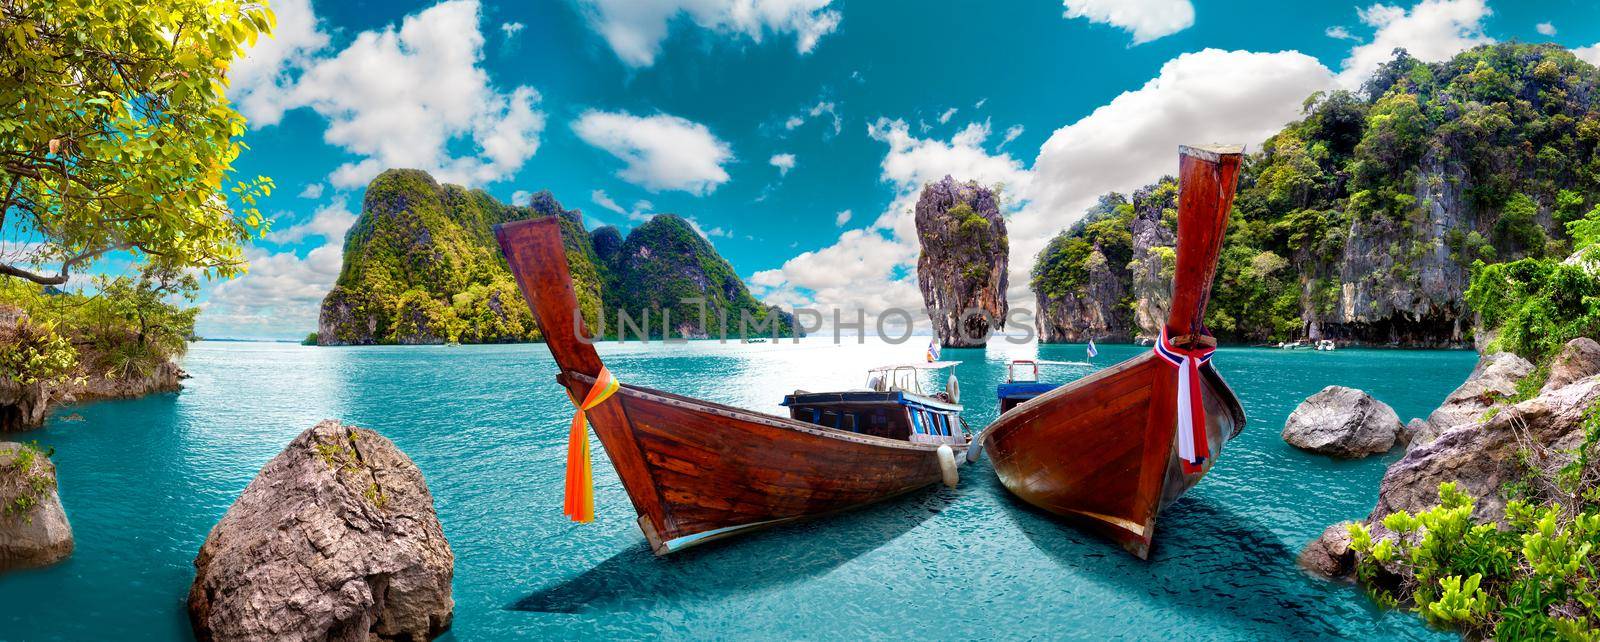 Scenic landscape.Phuket Seascape by carloscastilla